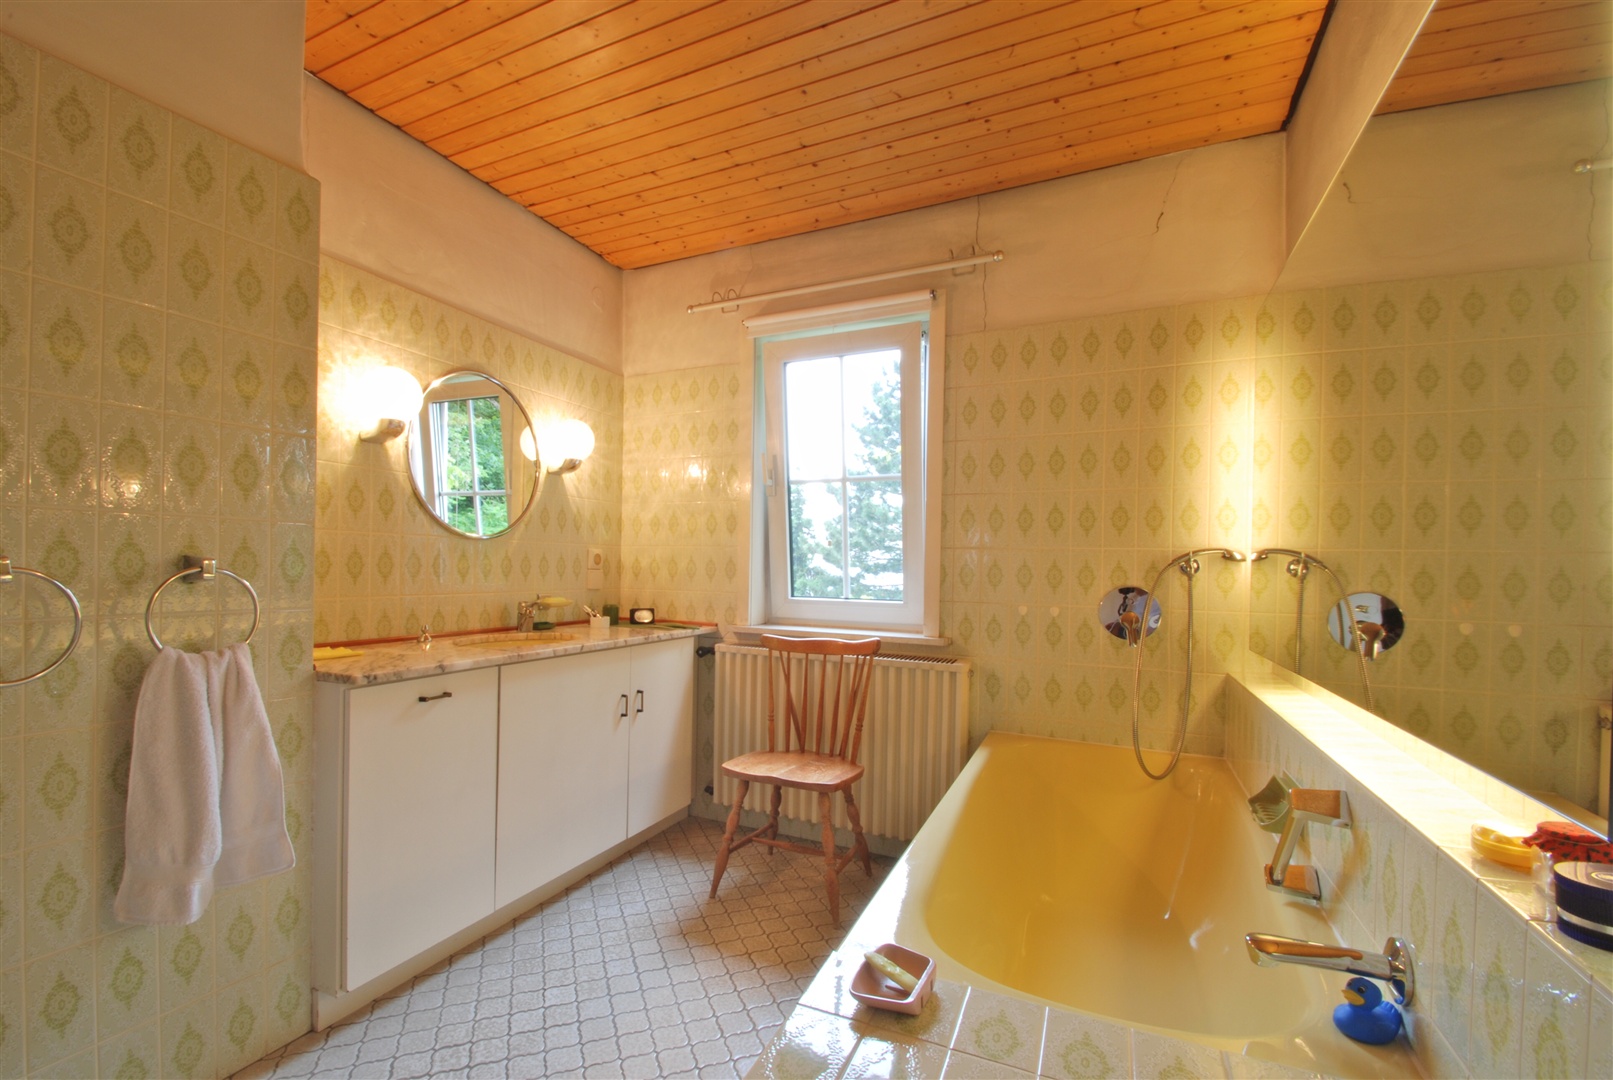 Elternbadezimmer mit Wanne, zwei Waschtischen, Einbauschrank und WC. - Oliver Reifferscheid - Immobilienmakler Darmstadt